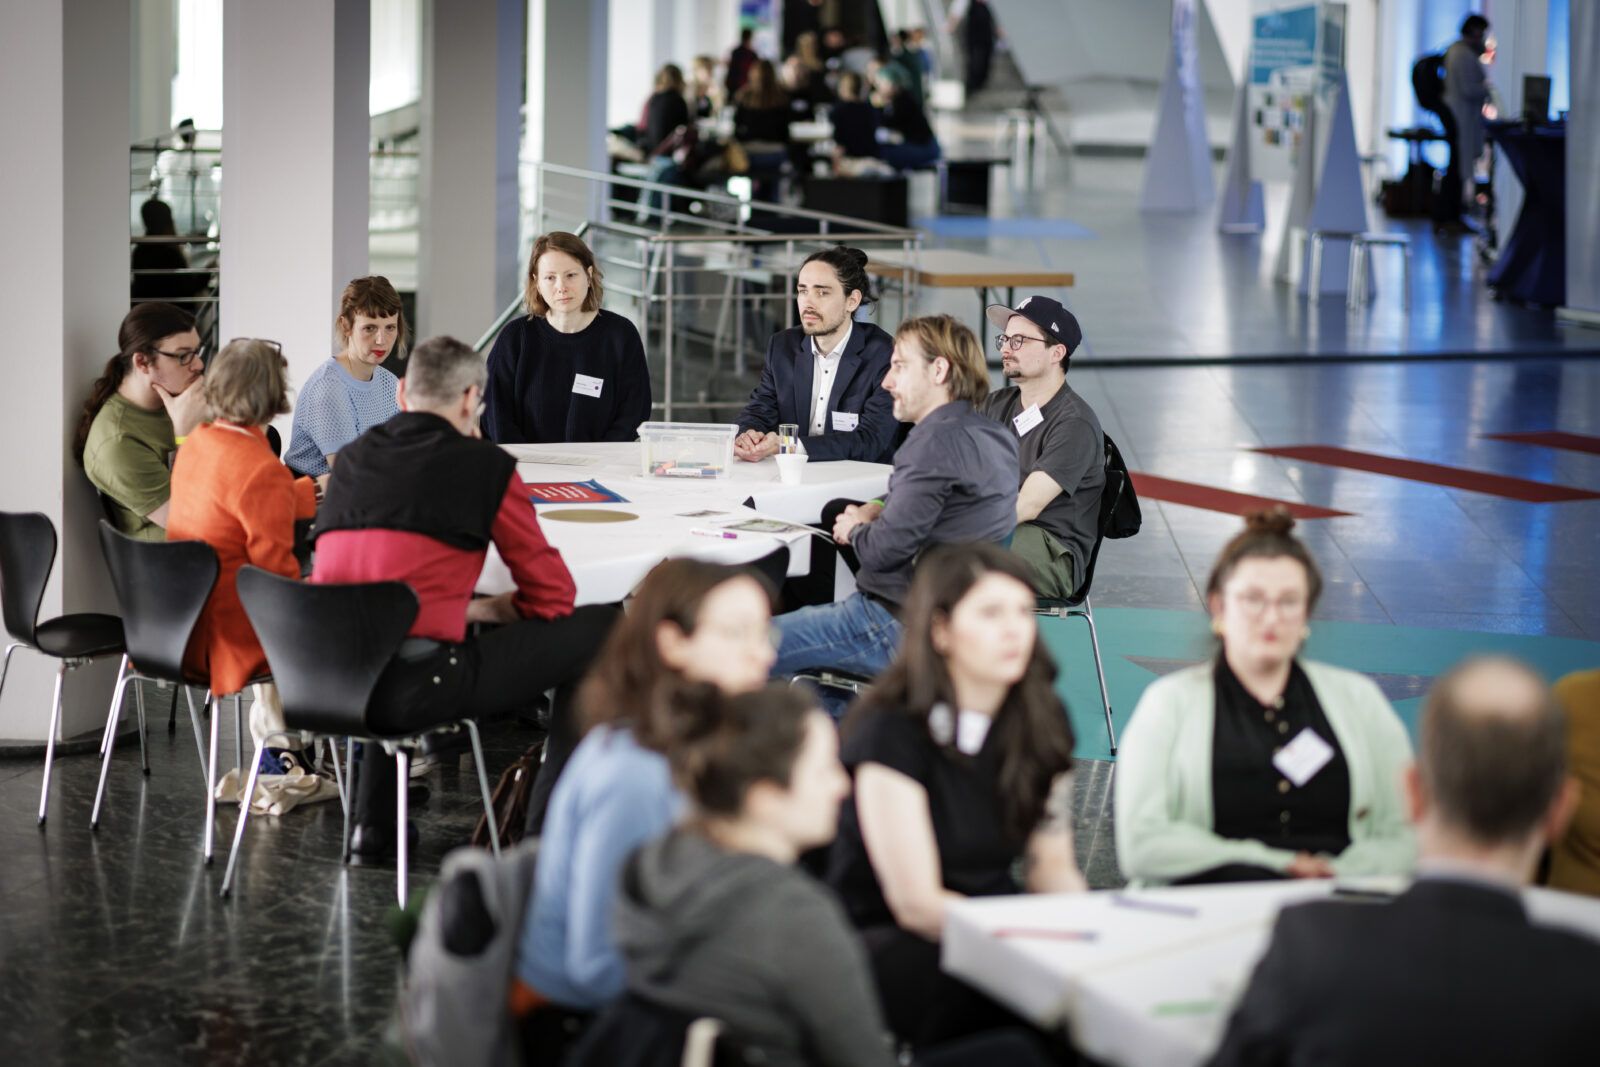 Ein lockerer Arbeitsatmosphäre sitzen mehrere Personen im Berliner Kulturforum um Tische herum.